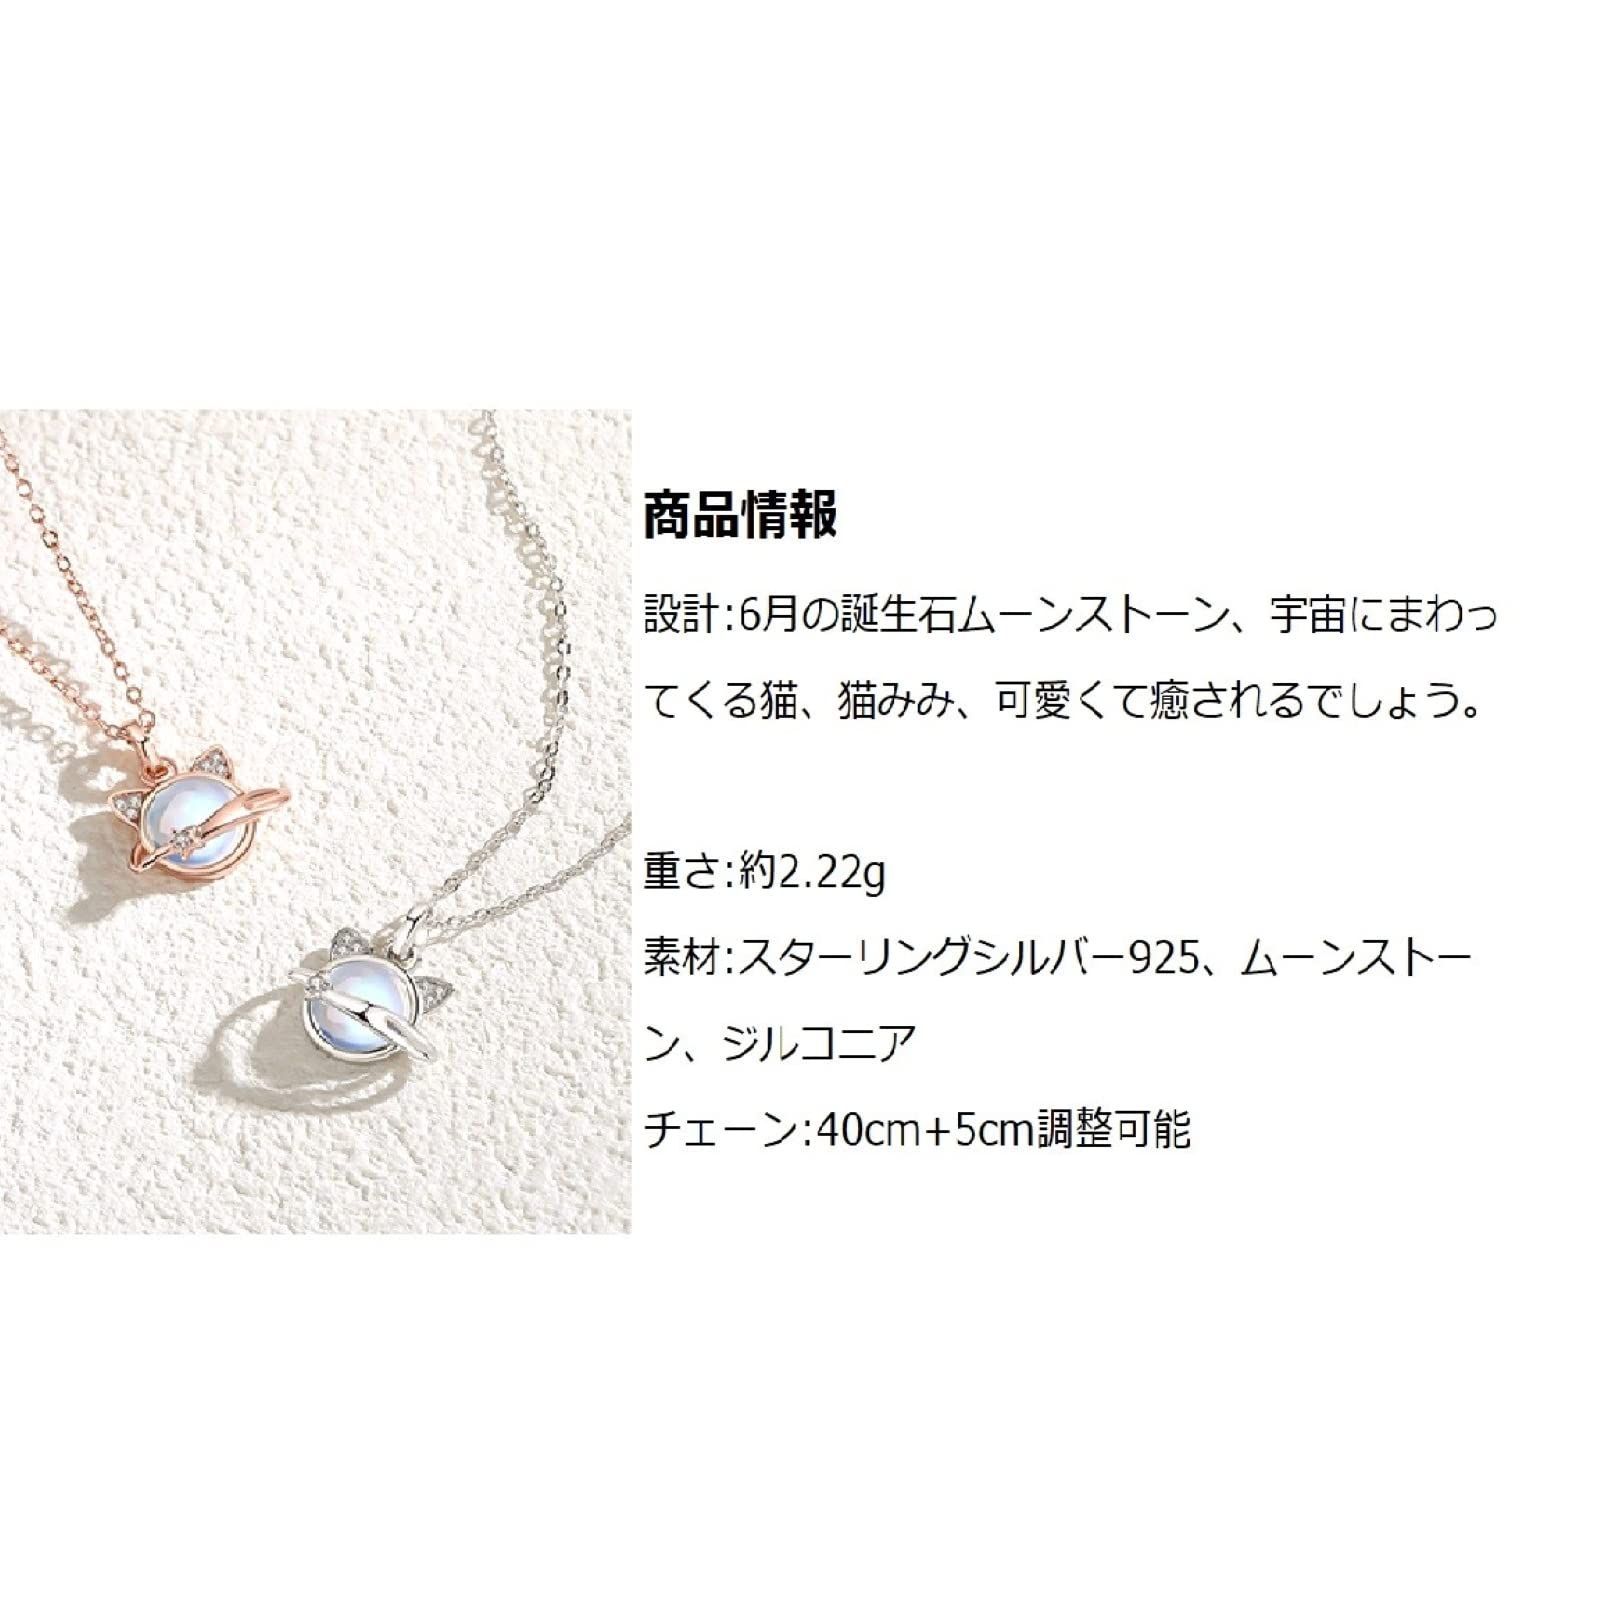 【特価商品】Bellitia Jewelry ムーンストーン 6月誕生石 宇宙猫